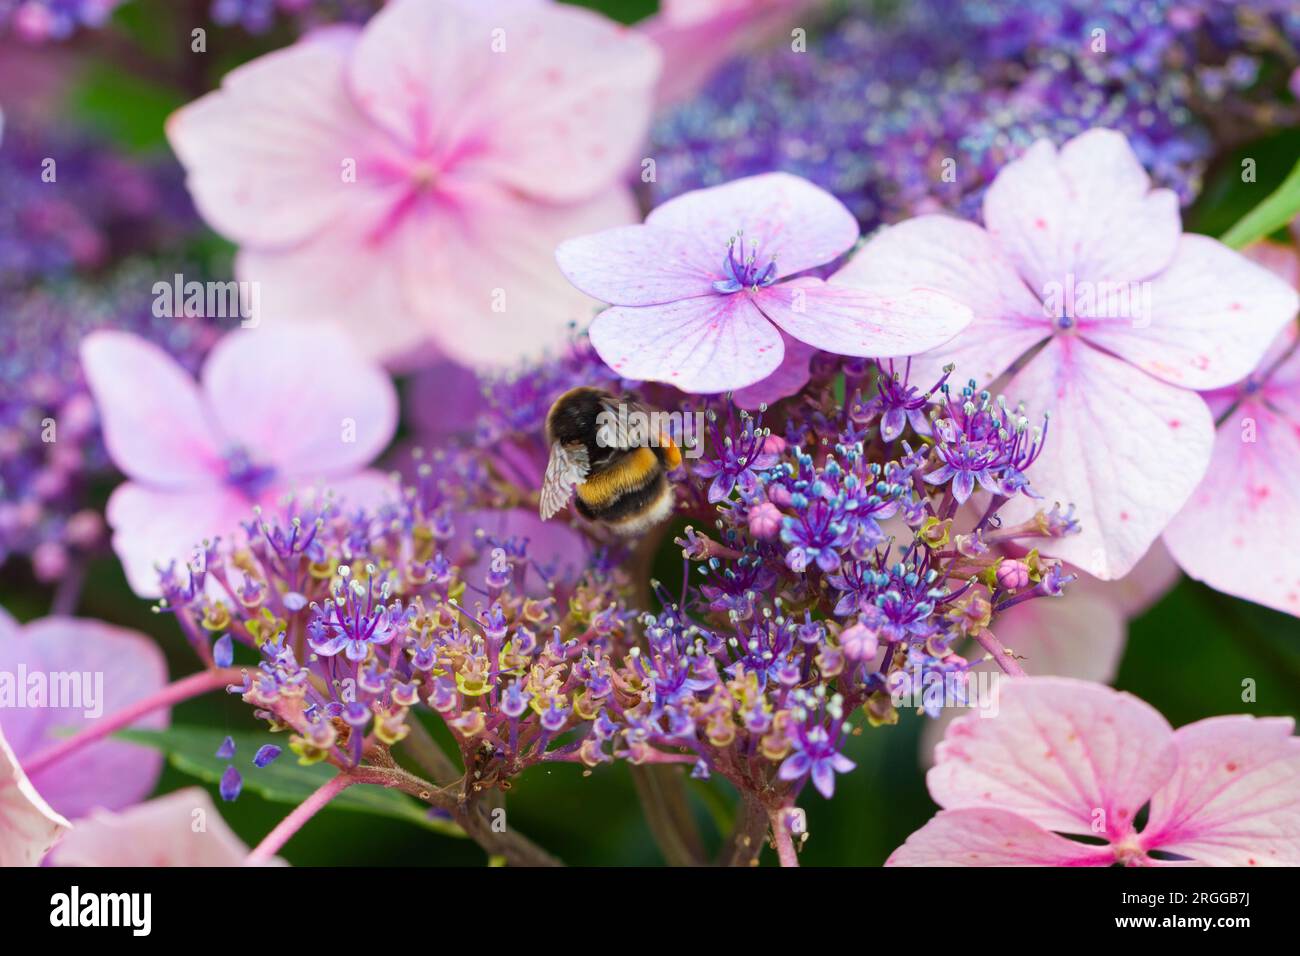 Jardinage d'été - gros plan d'un bourdon à queue blanche se nourrissant d'une variété florissante d'Hydrangea serrata 'Bluebird'. Banque D'Images